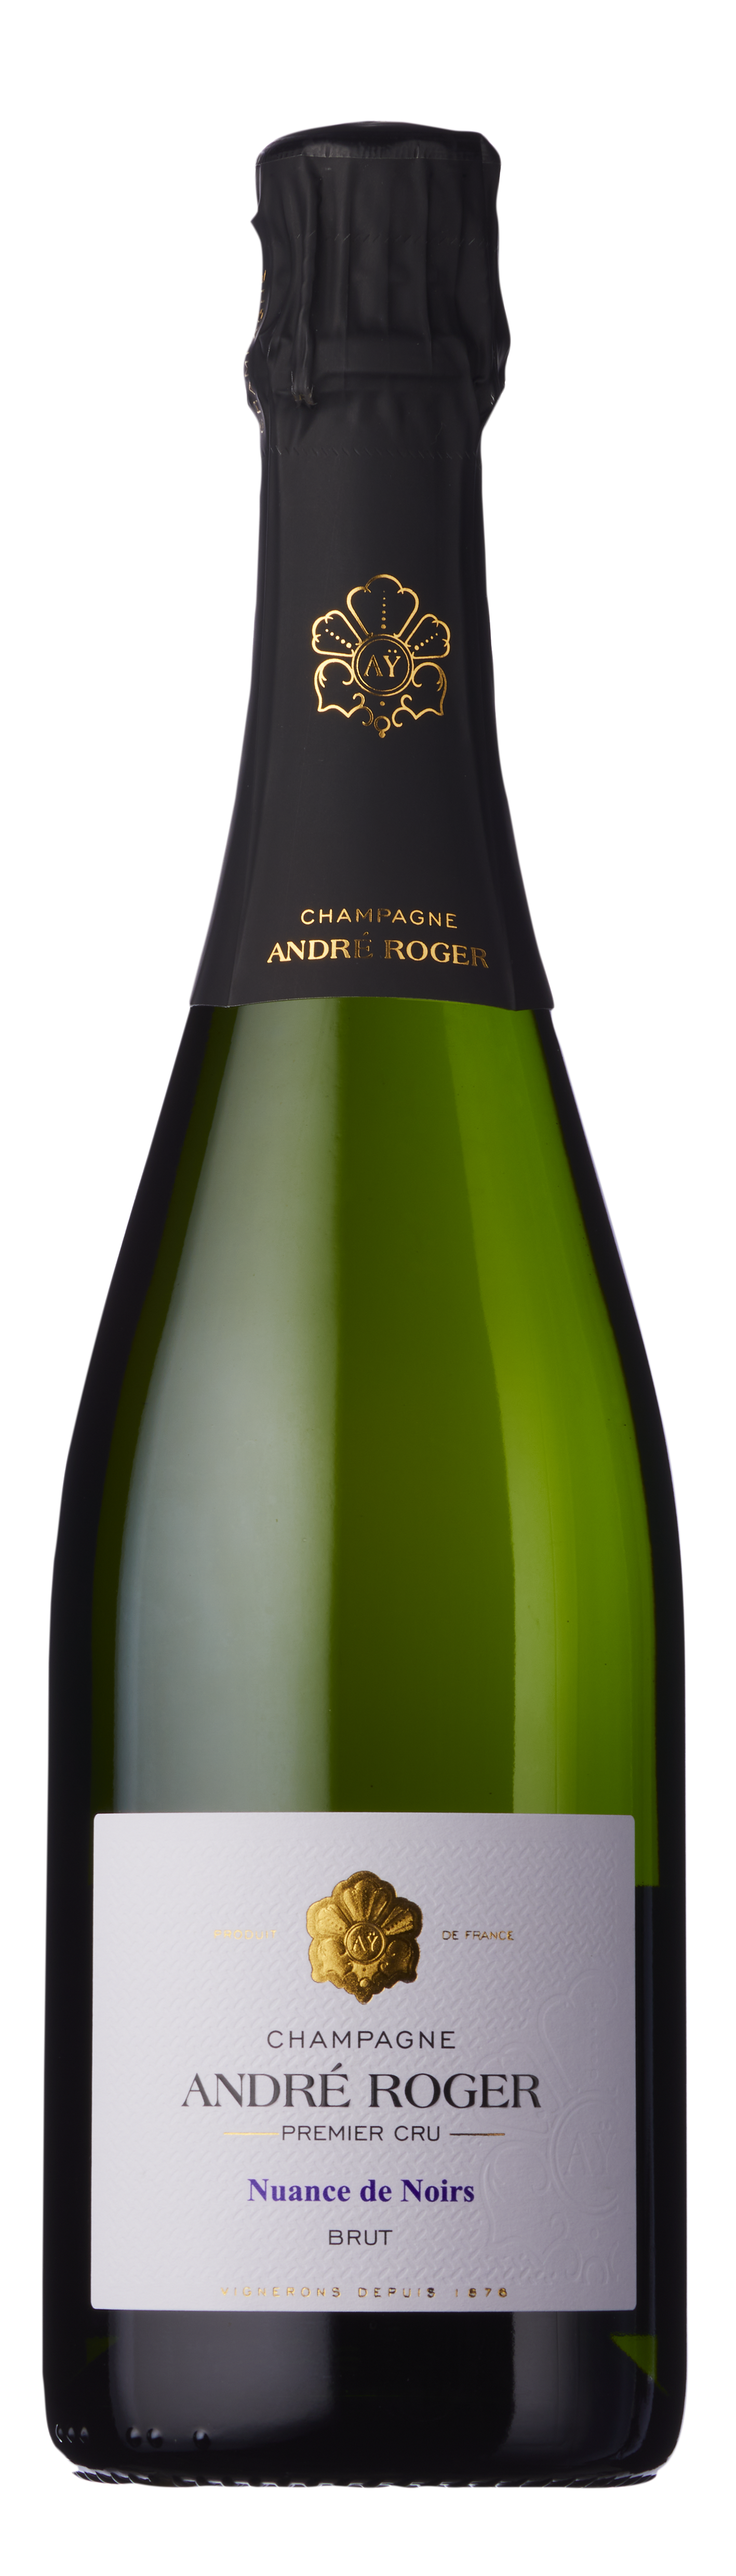 Champagne André Roger, Nuance de Noirs Brut Premier Cru, Aÿ, Champagne, France